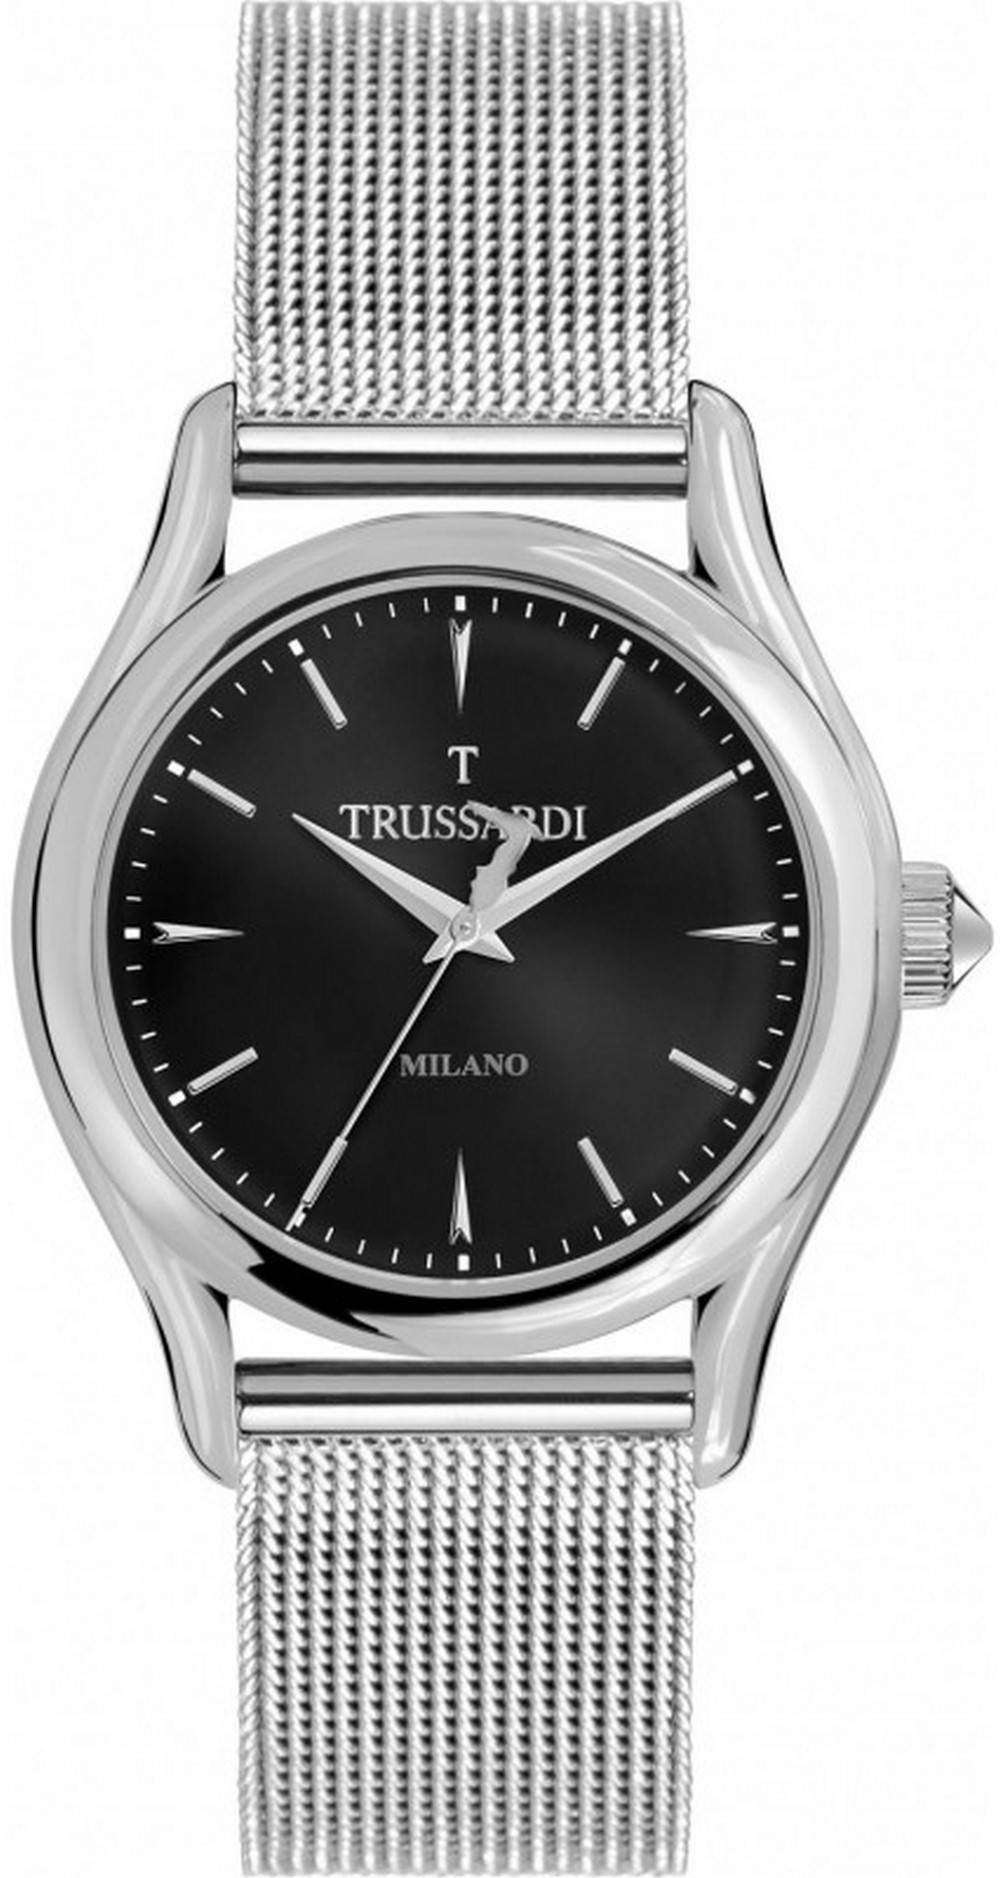 Trussardi T-Light Milano Quartz R2453127004 100M Men's Watch